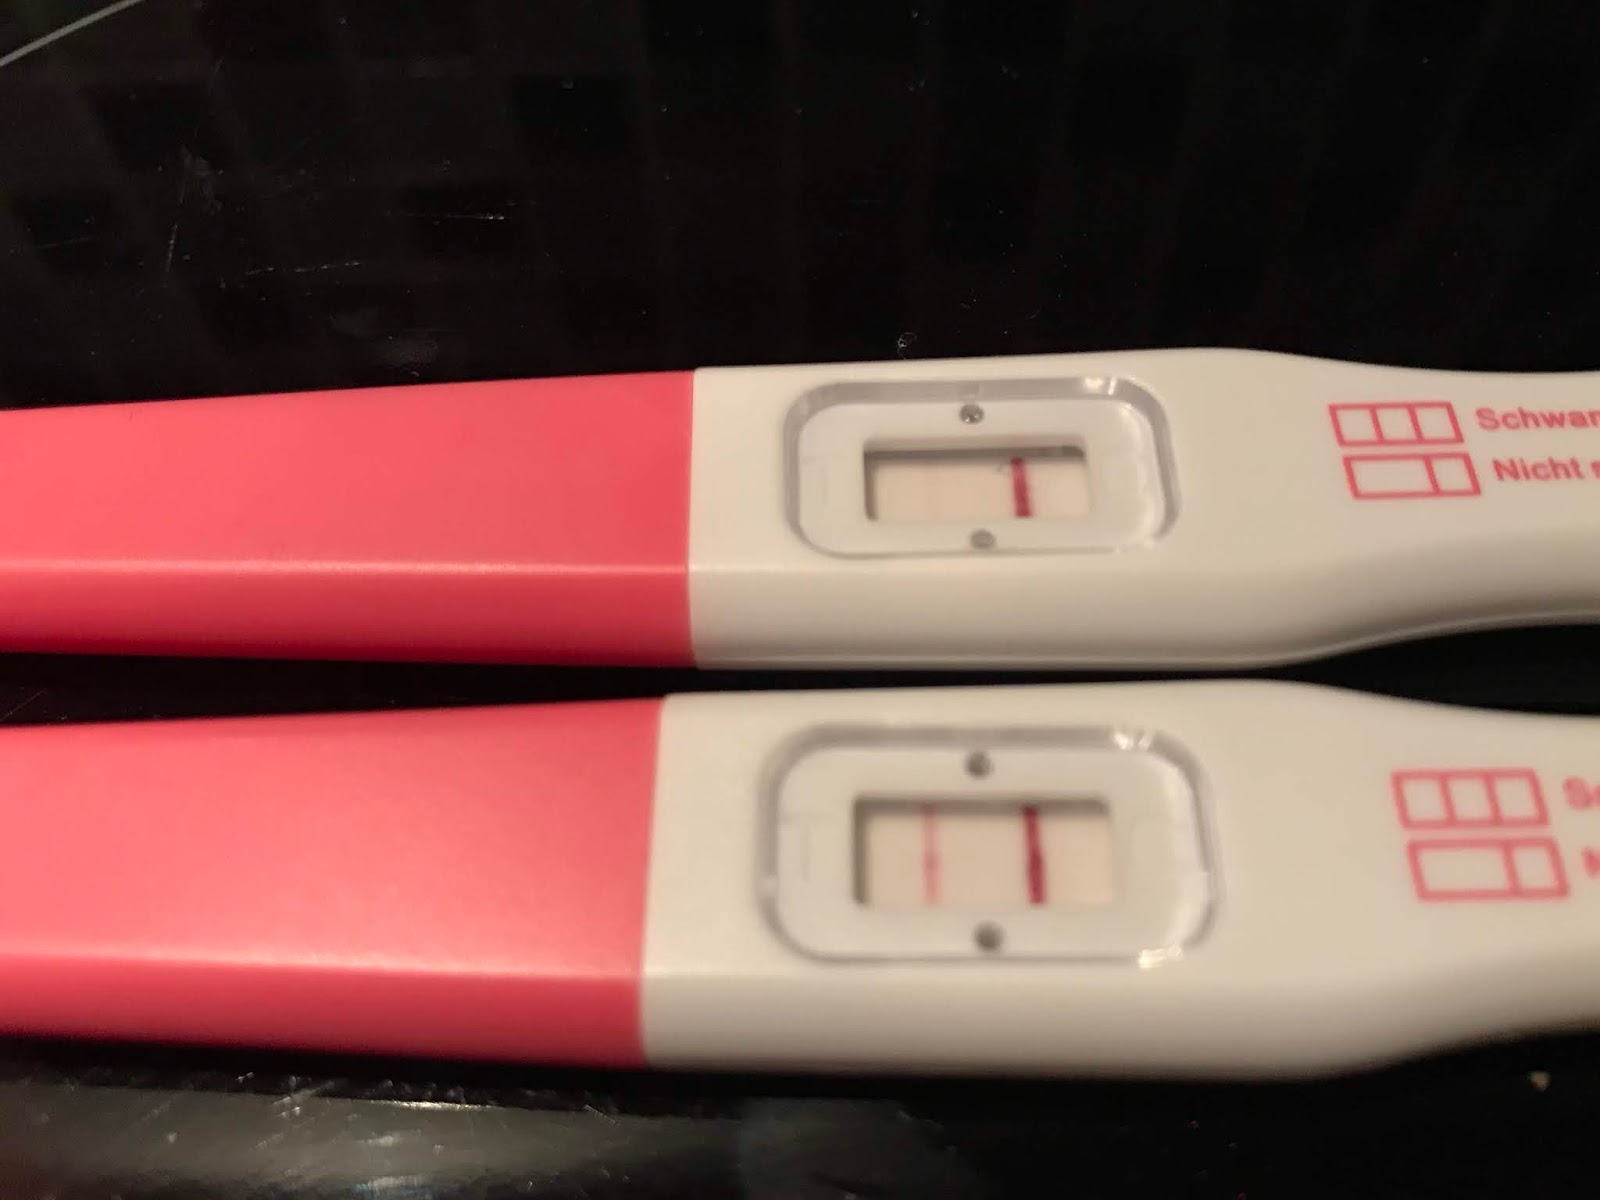 schwangerschaftstest ganz leicht positiv - alphaomega7.com.